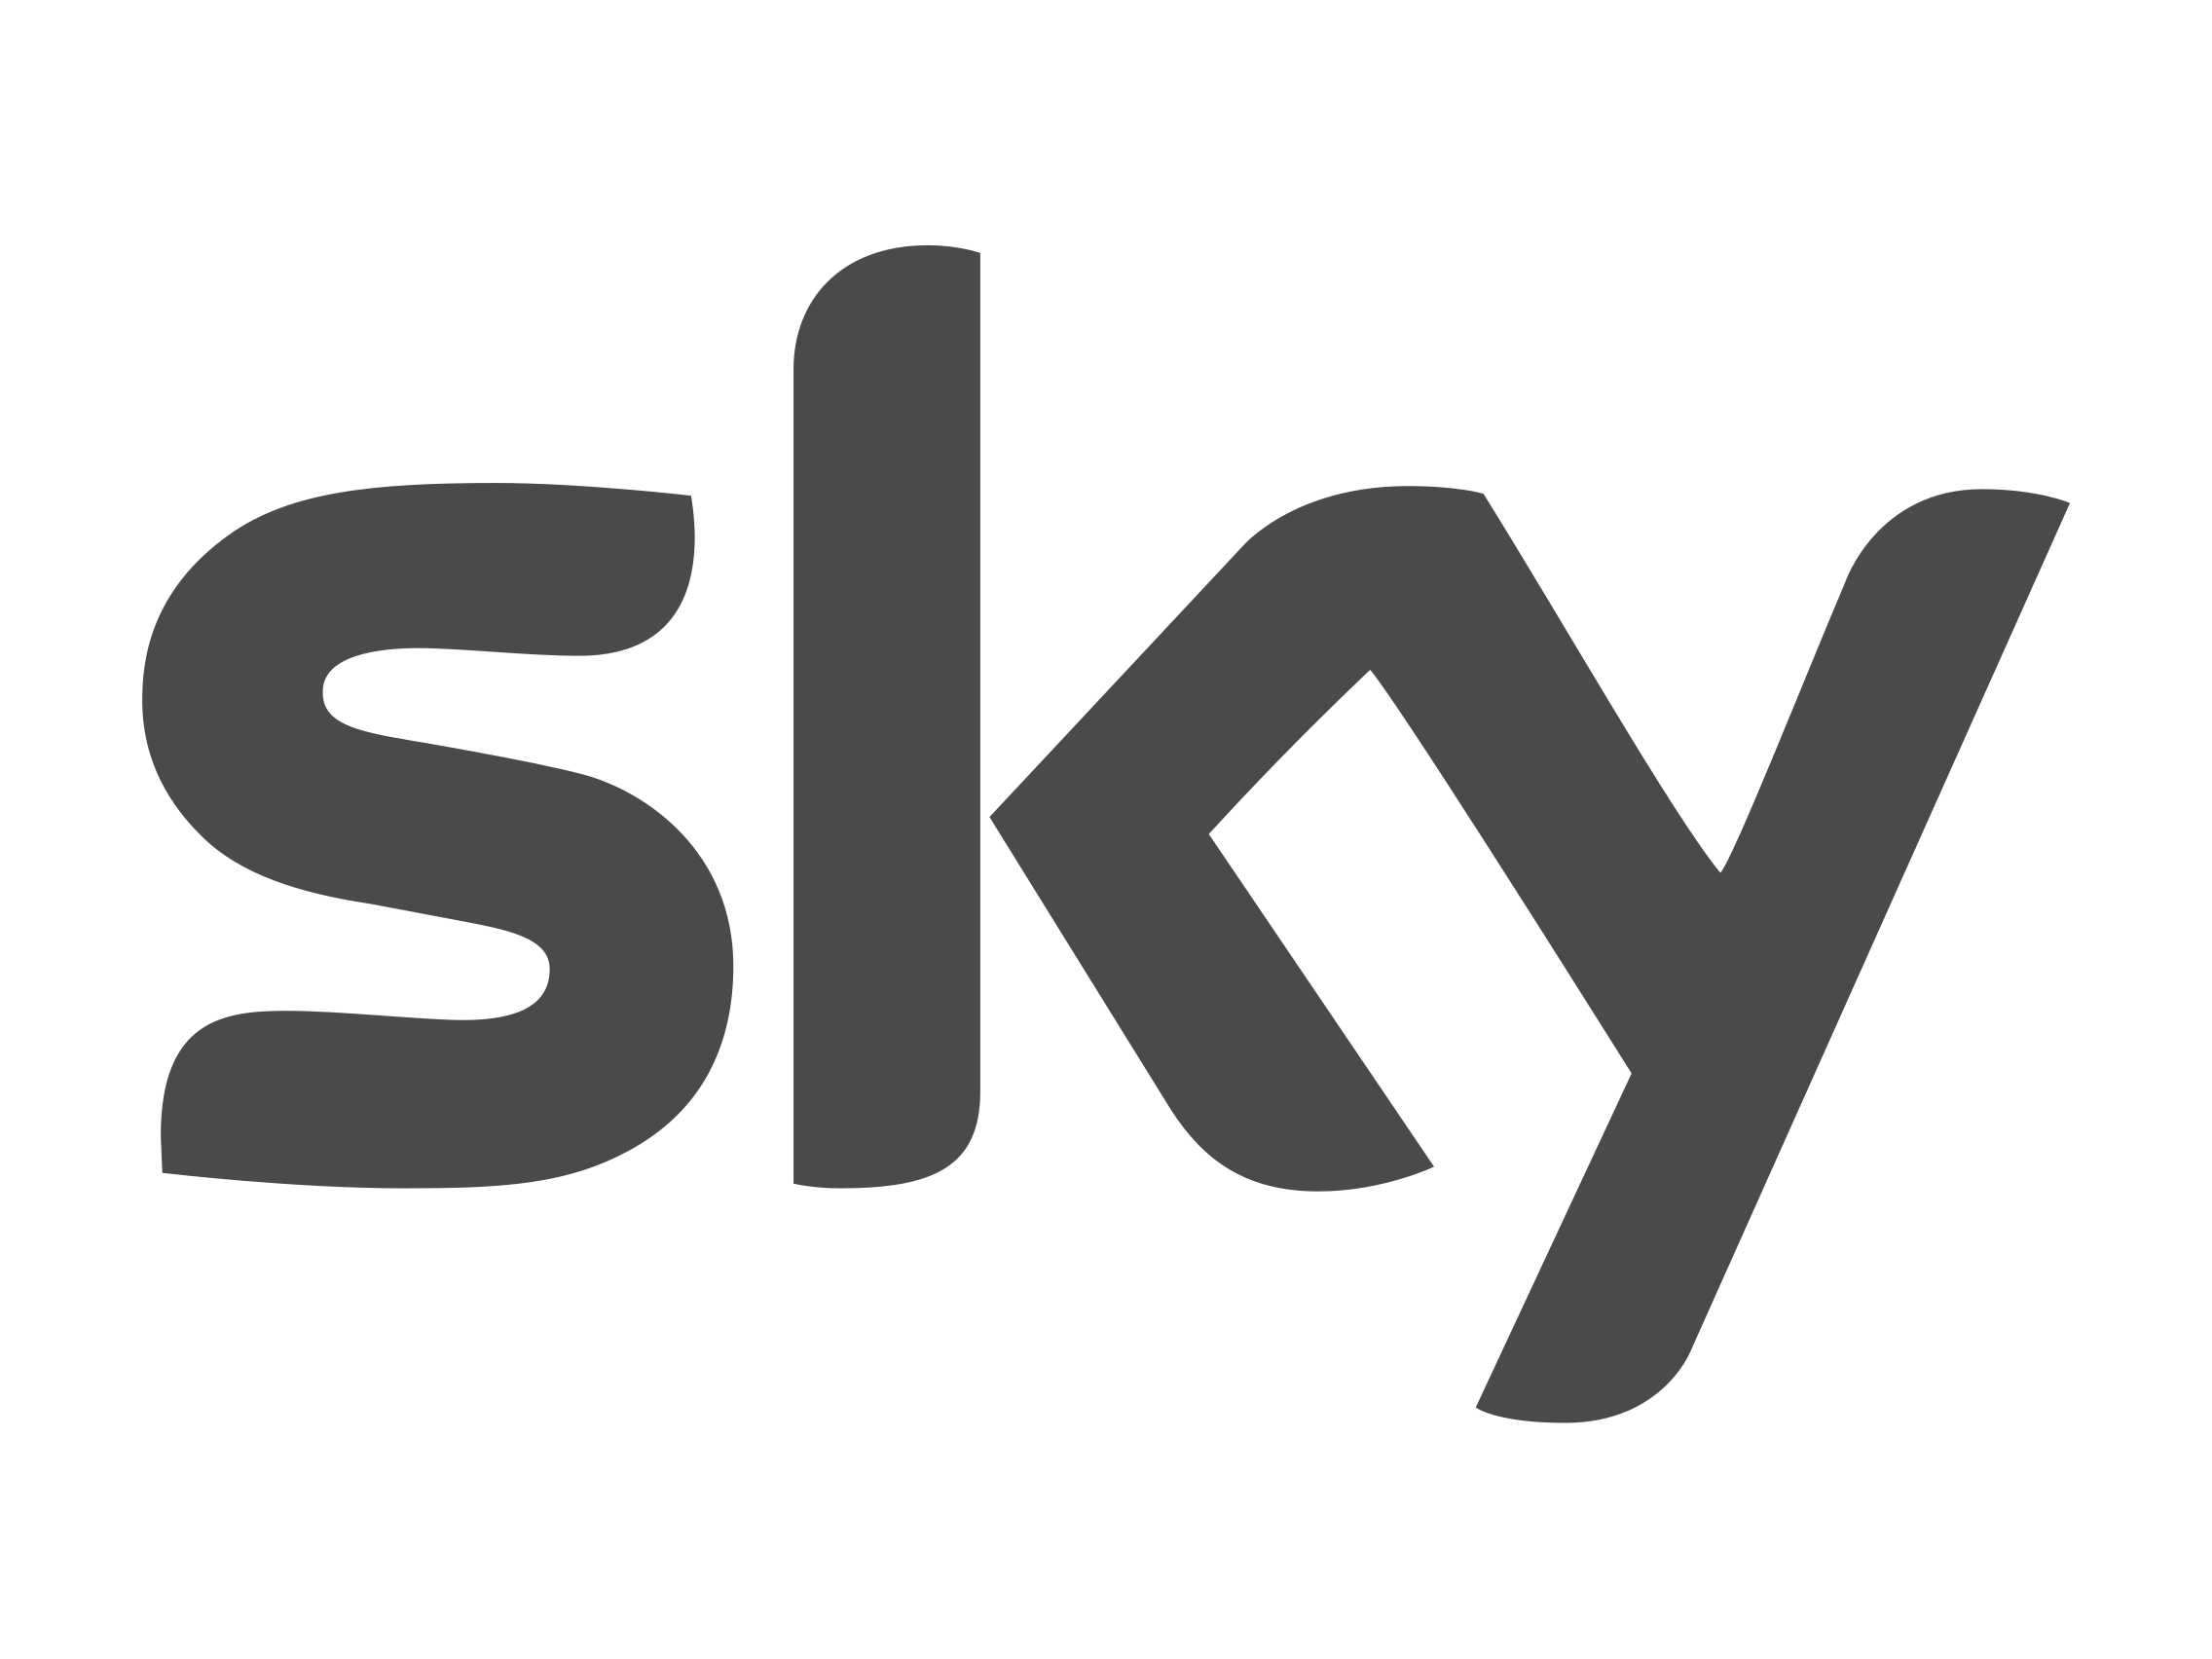 Grey Company Logo - Sky logo